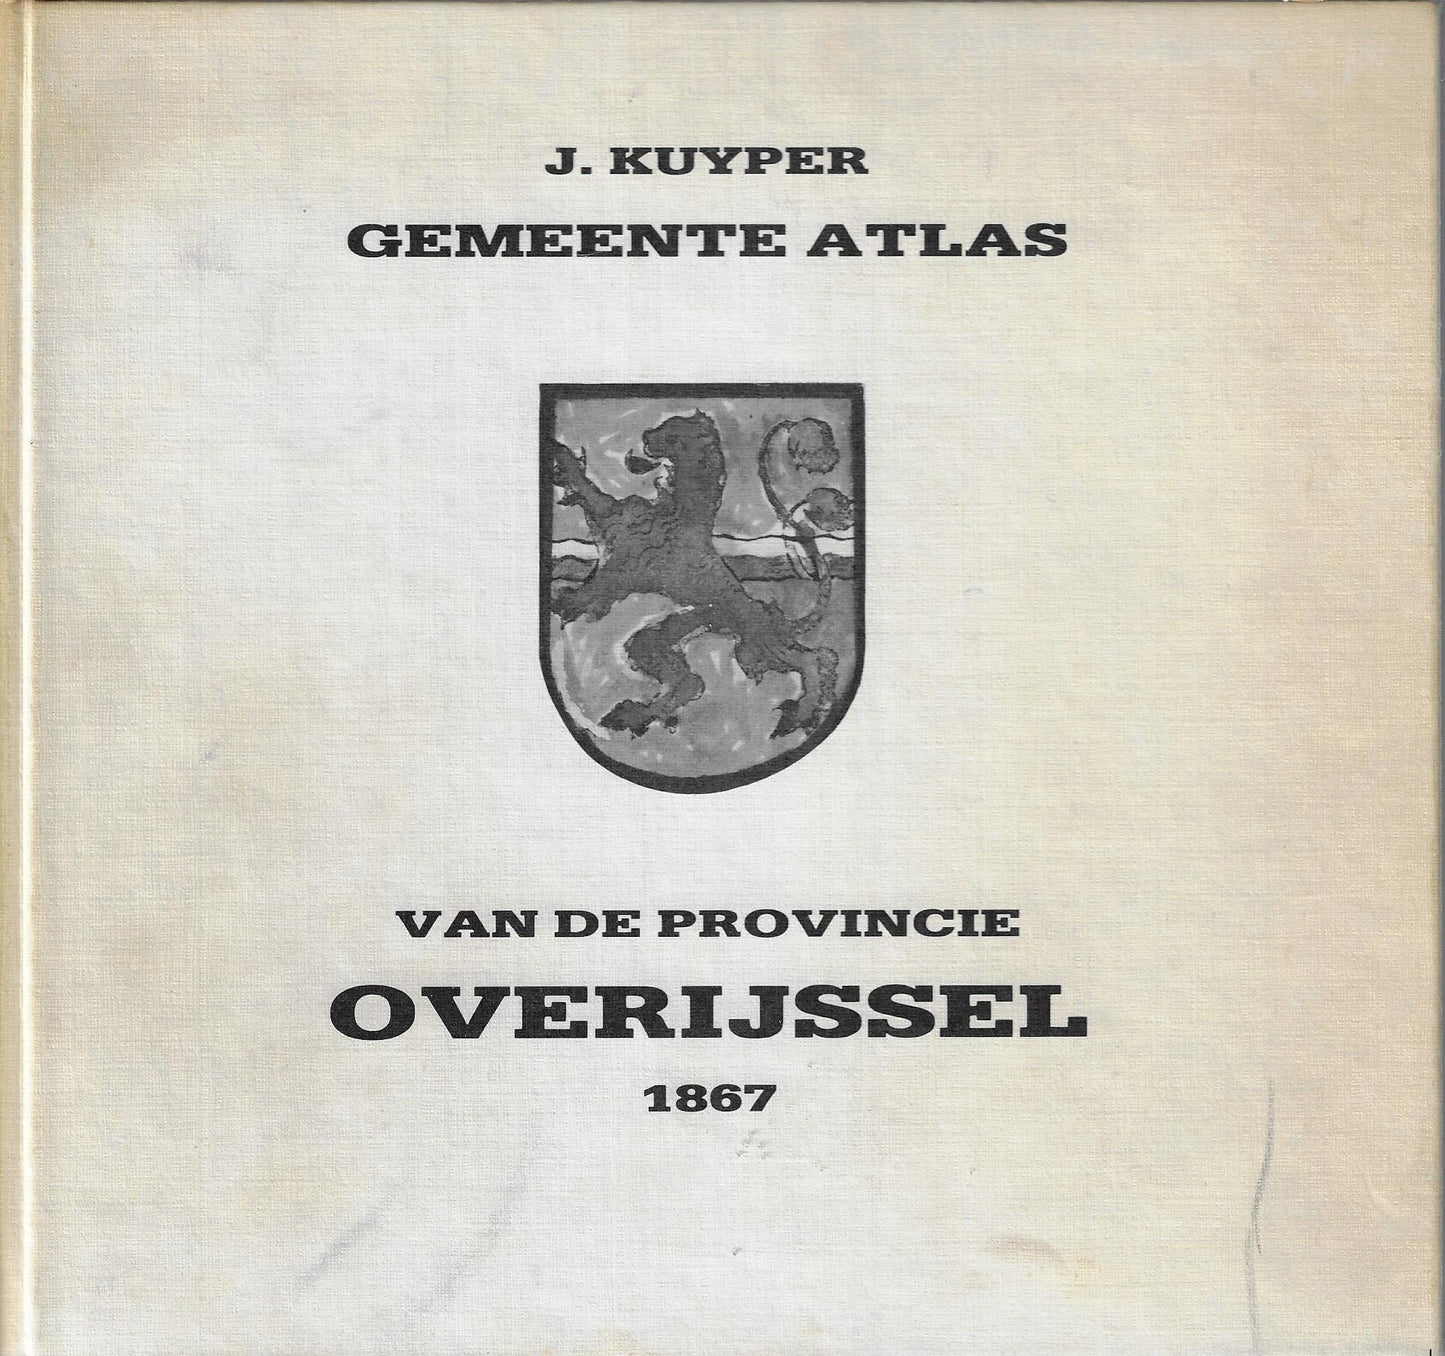 Gemeente Atlas van de provincie Overijssel